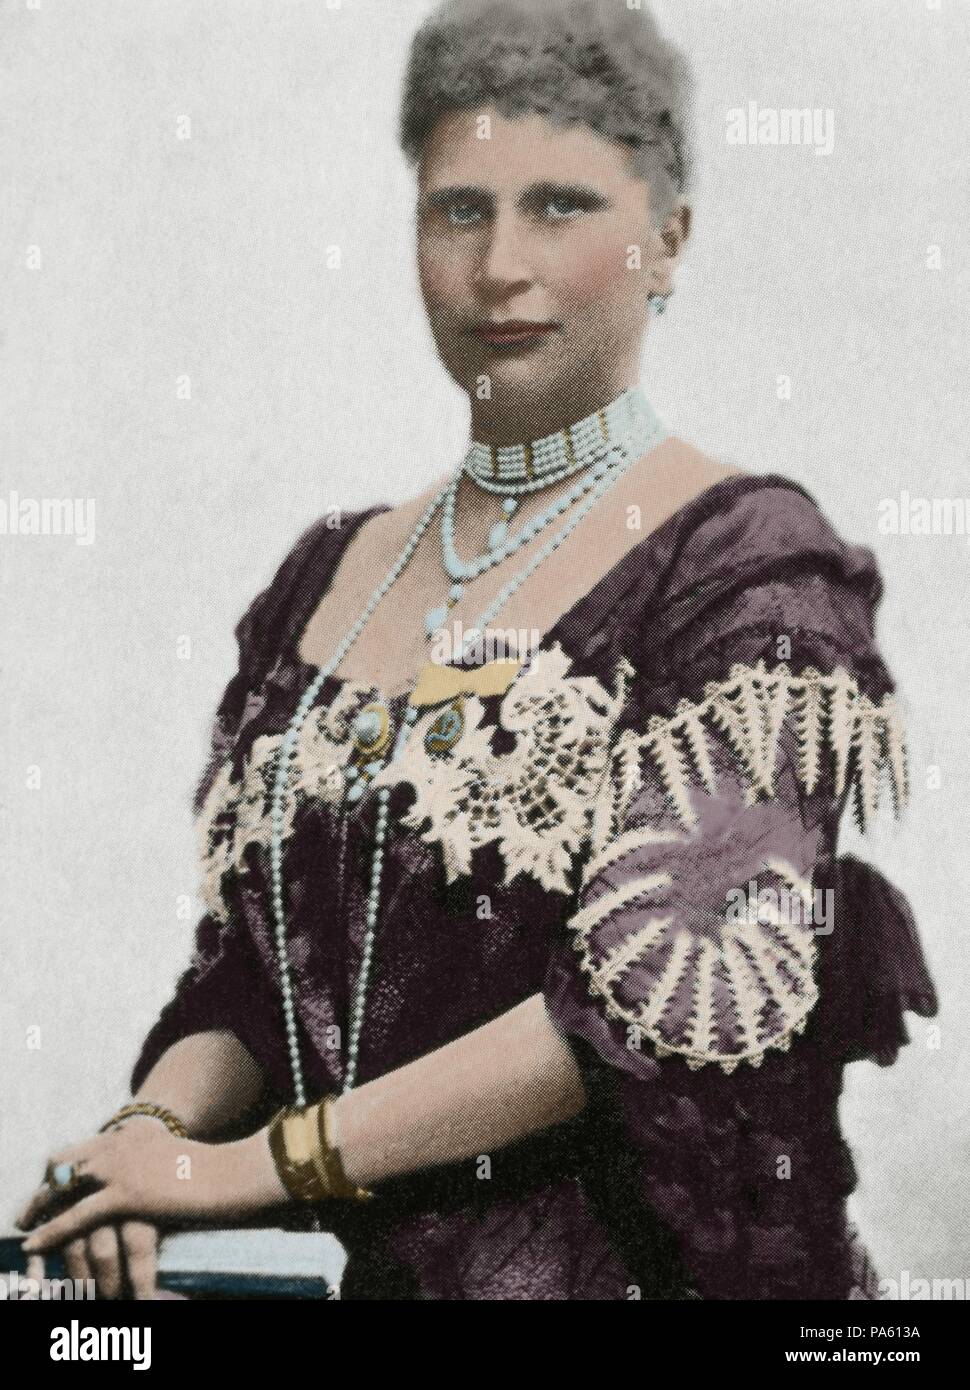 Louise von Schweden (1851-1926). Königin von Dänemark als die Frau von König Friedrich VIII. Porträt. Fotografie. Gefärbt. Stockfoto